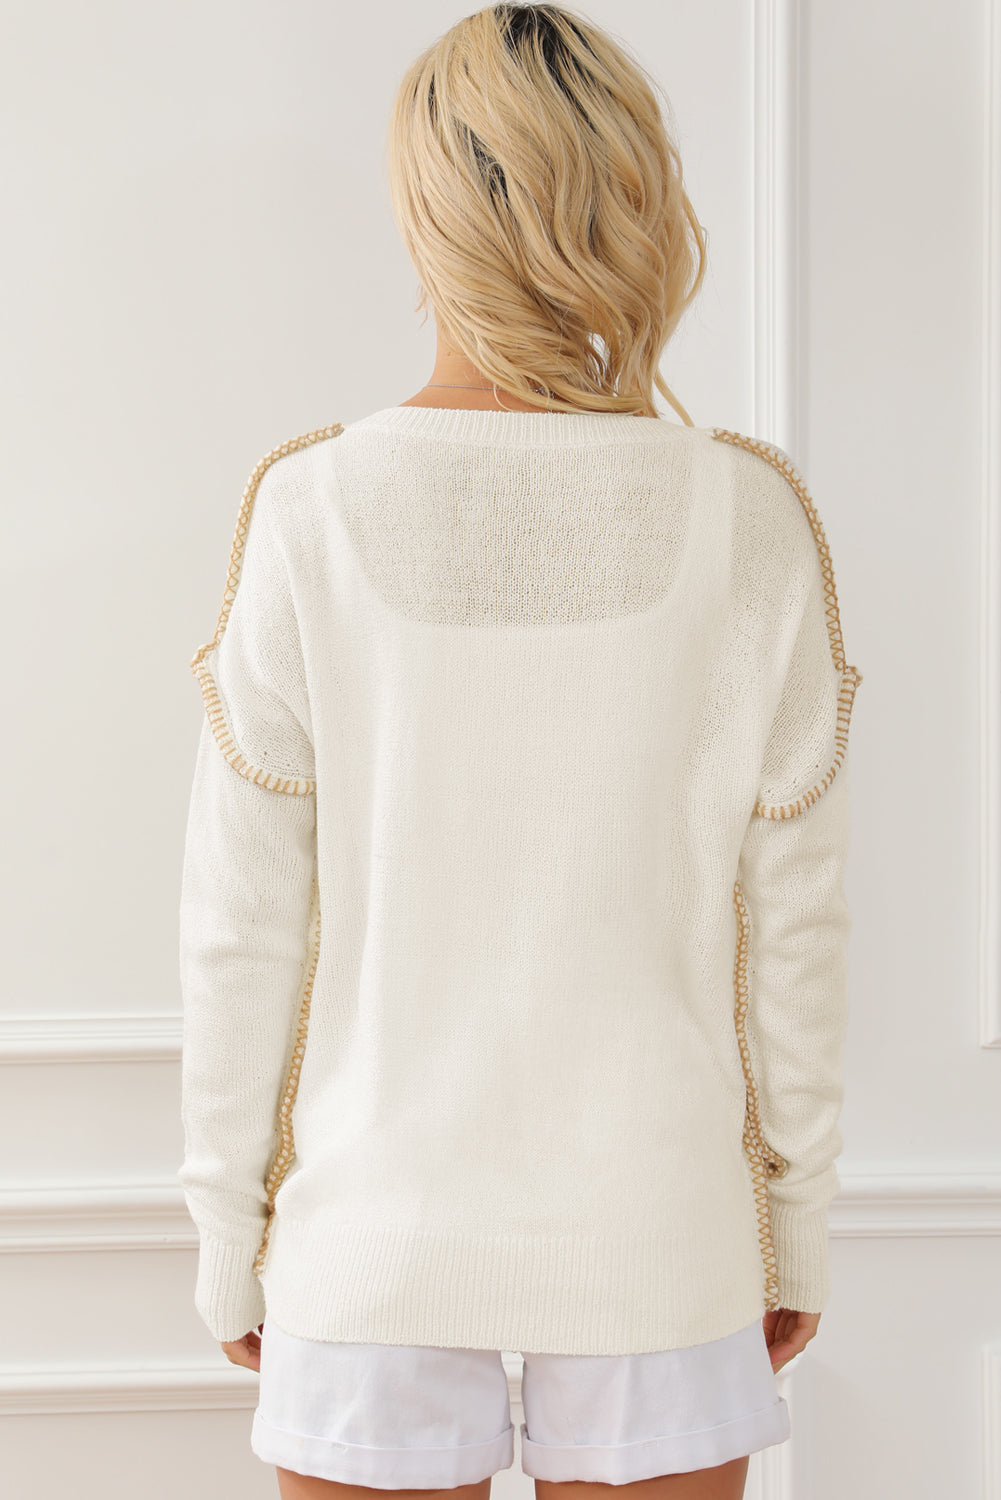 Beigefarbener Pullover mit freiliegenden Nähten auf der Brusttasche und überschnittener Schulter